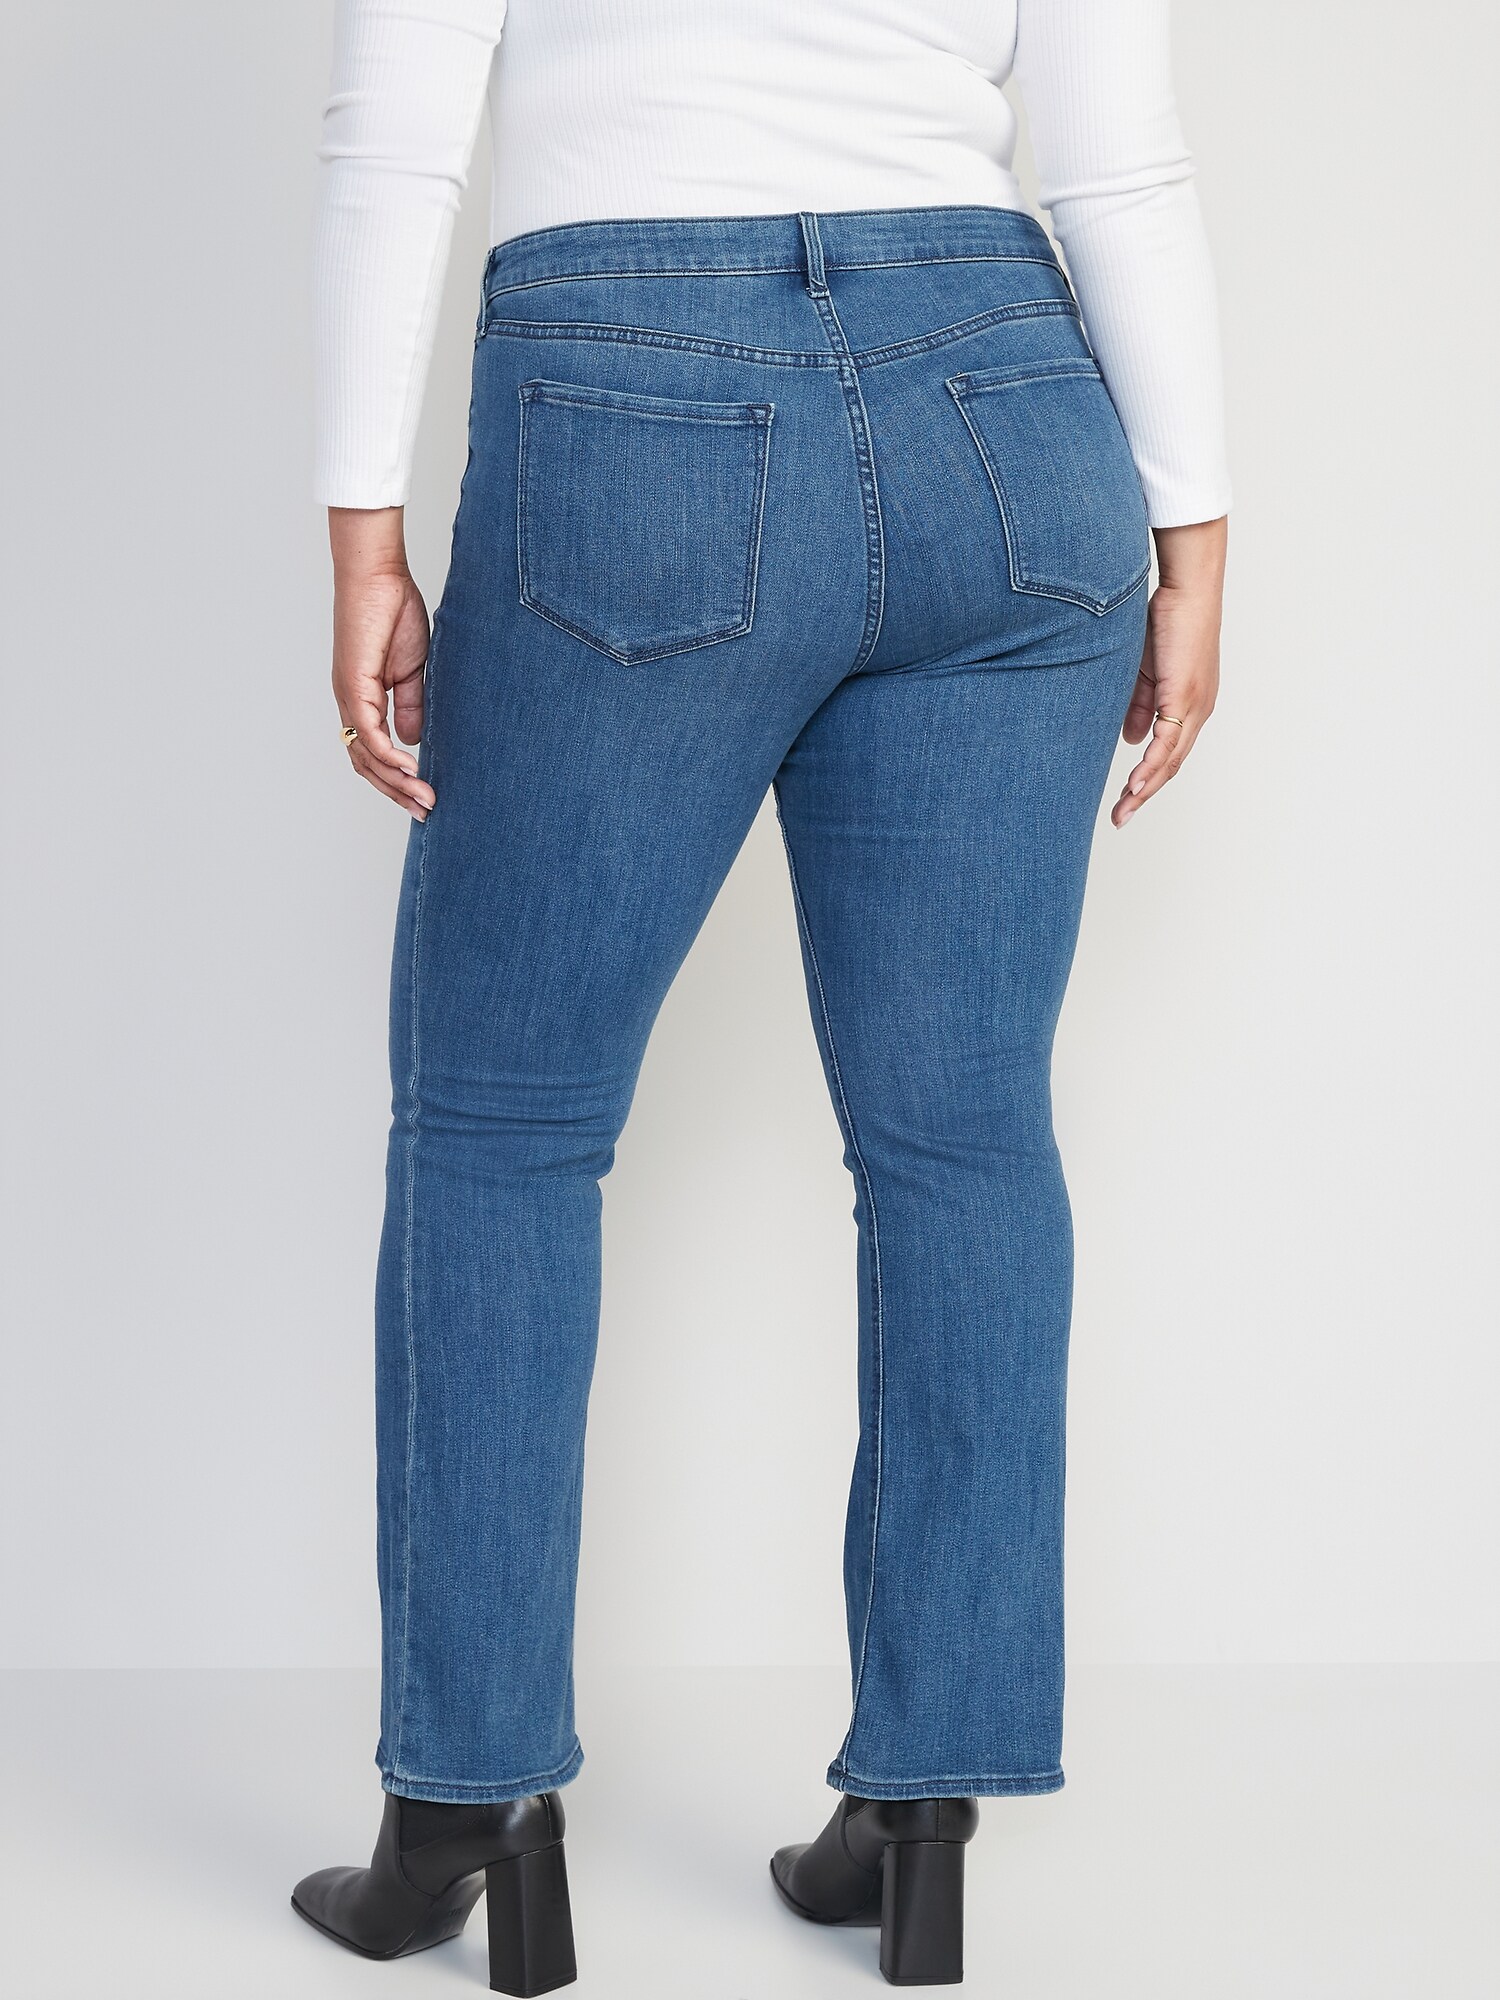 NYDJ women's blue medium wash mini boot cut jeans - 14wp